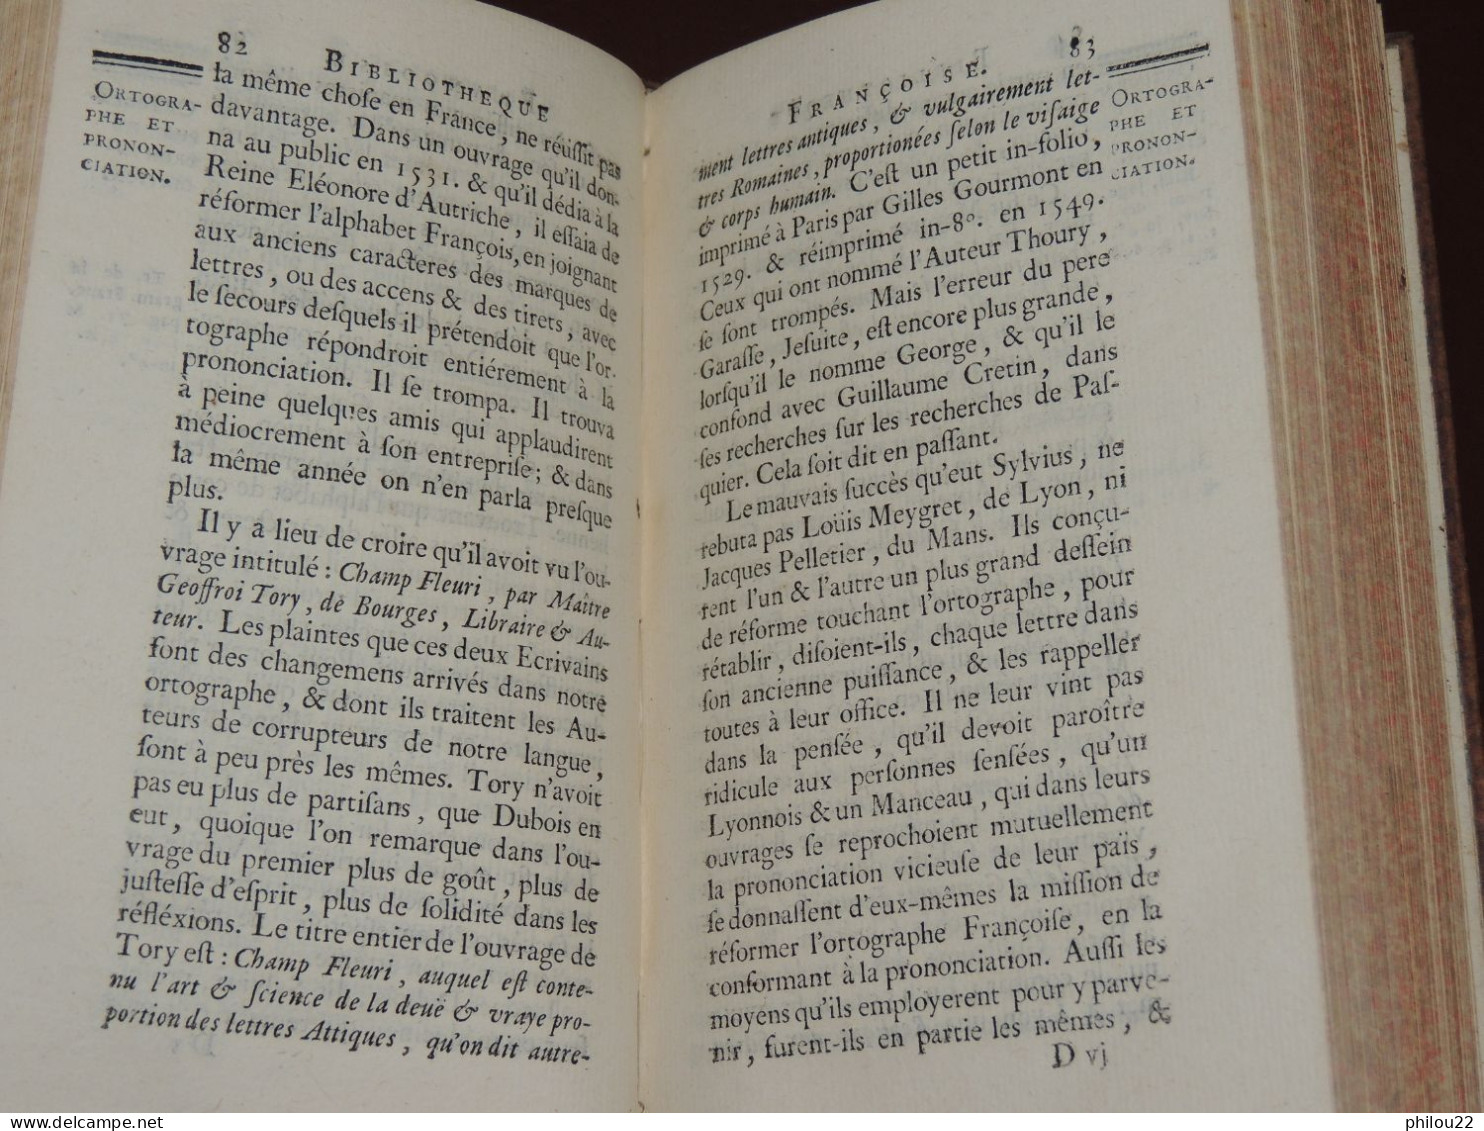 GOUJET  Bibliothèque françoise ou Histoire de la Littérature françoise 12 vol.  1741